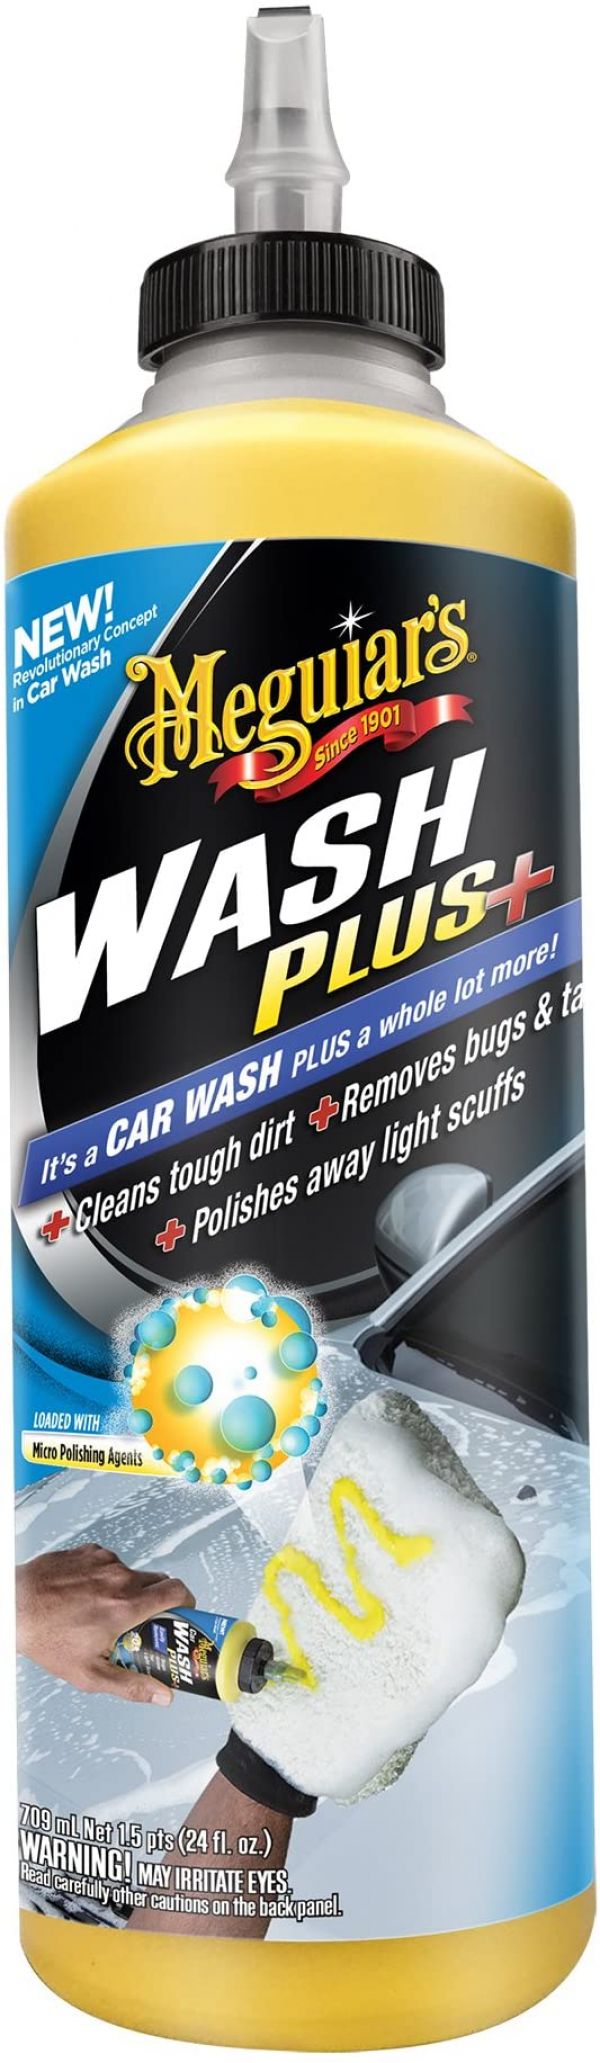 אתר הטיפוח לרכב שלך ניקוי חיצוני ושמפו לרכב WASH PLUS + נוזל רחיצה